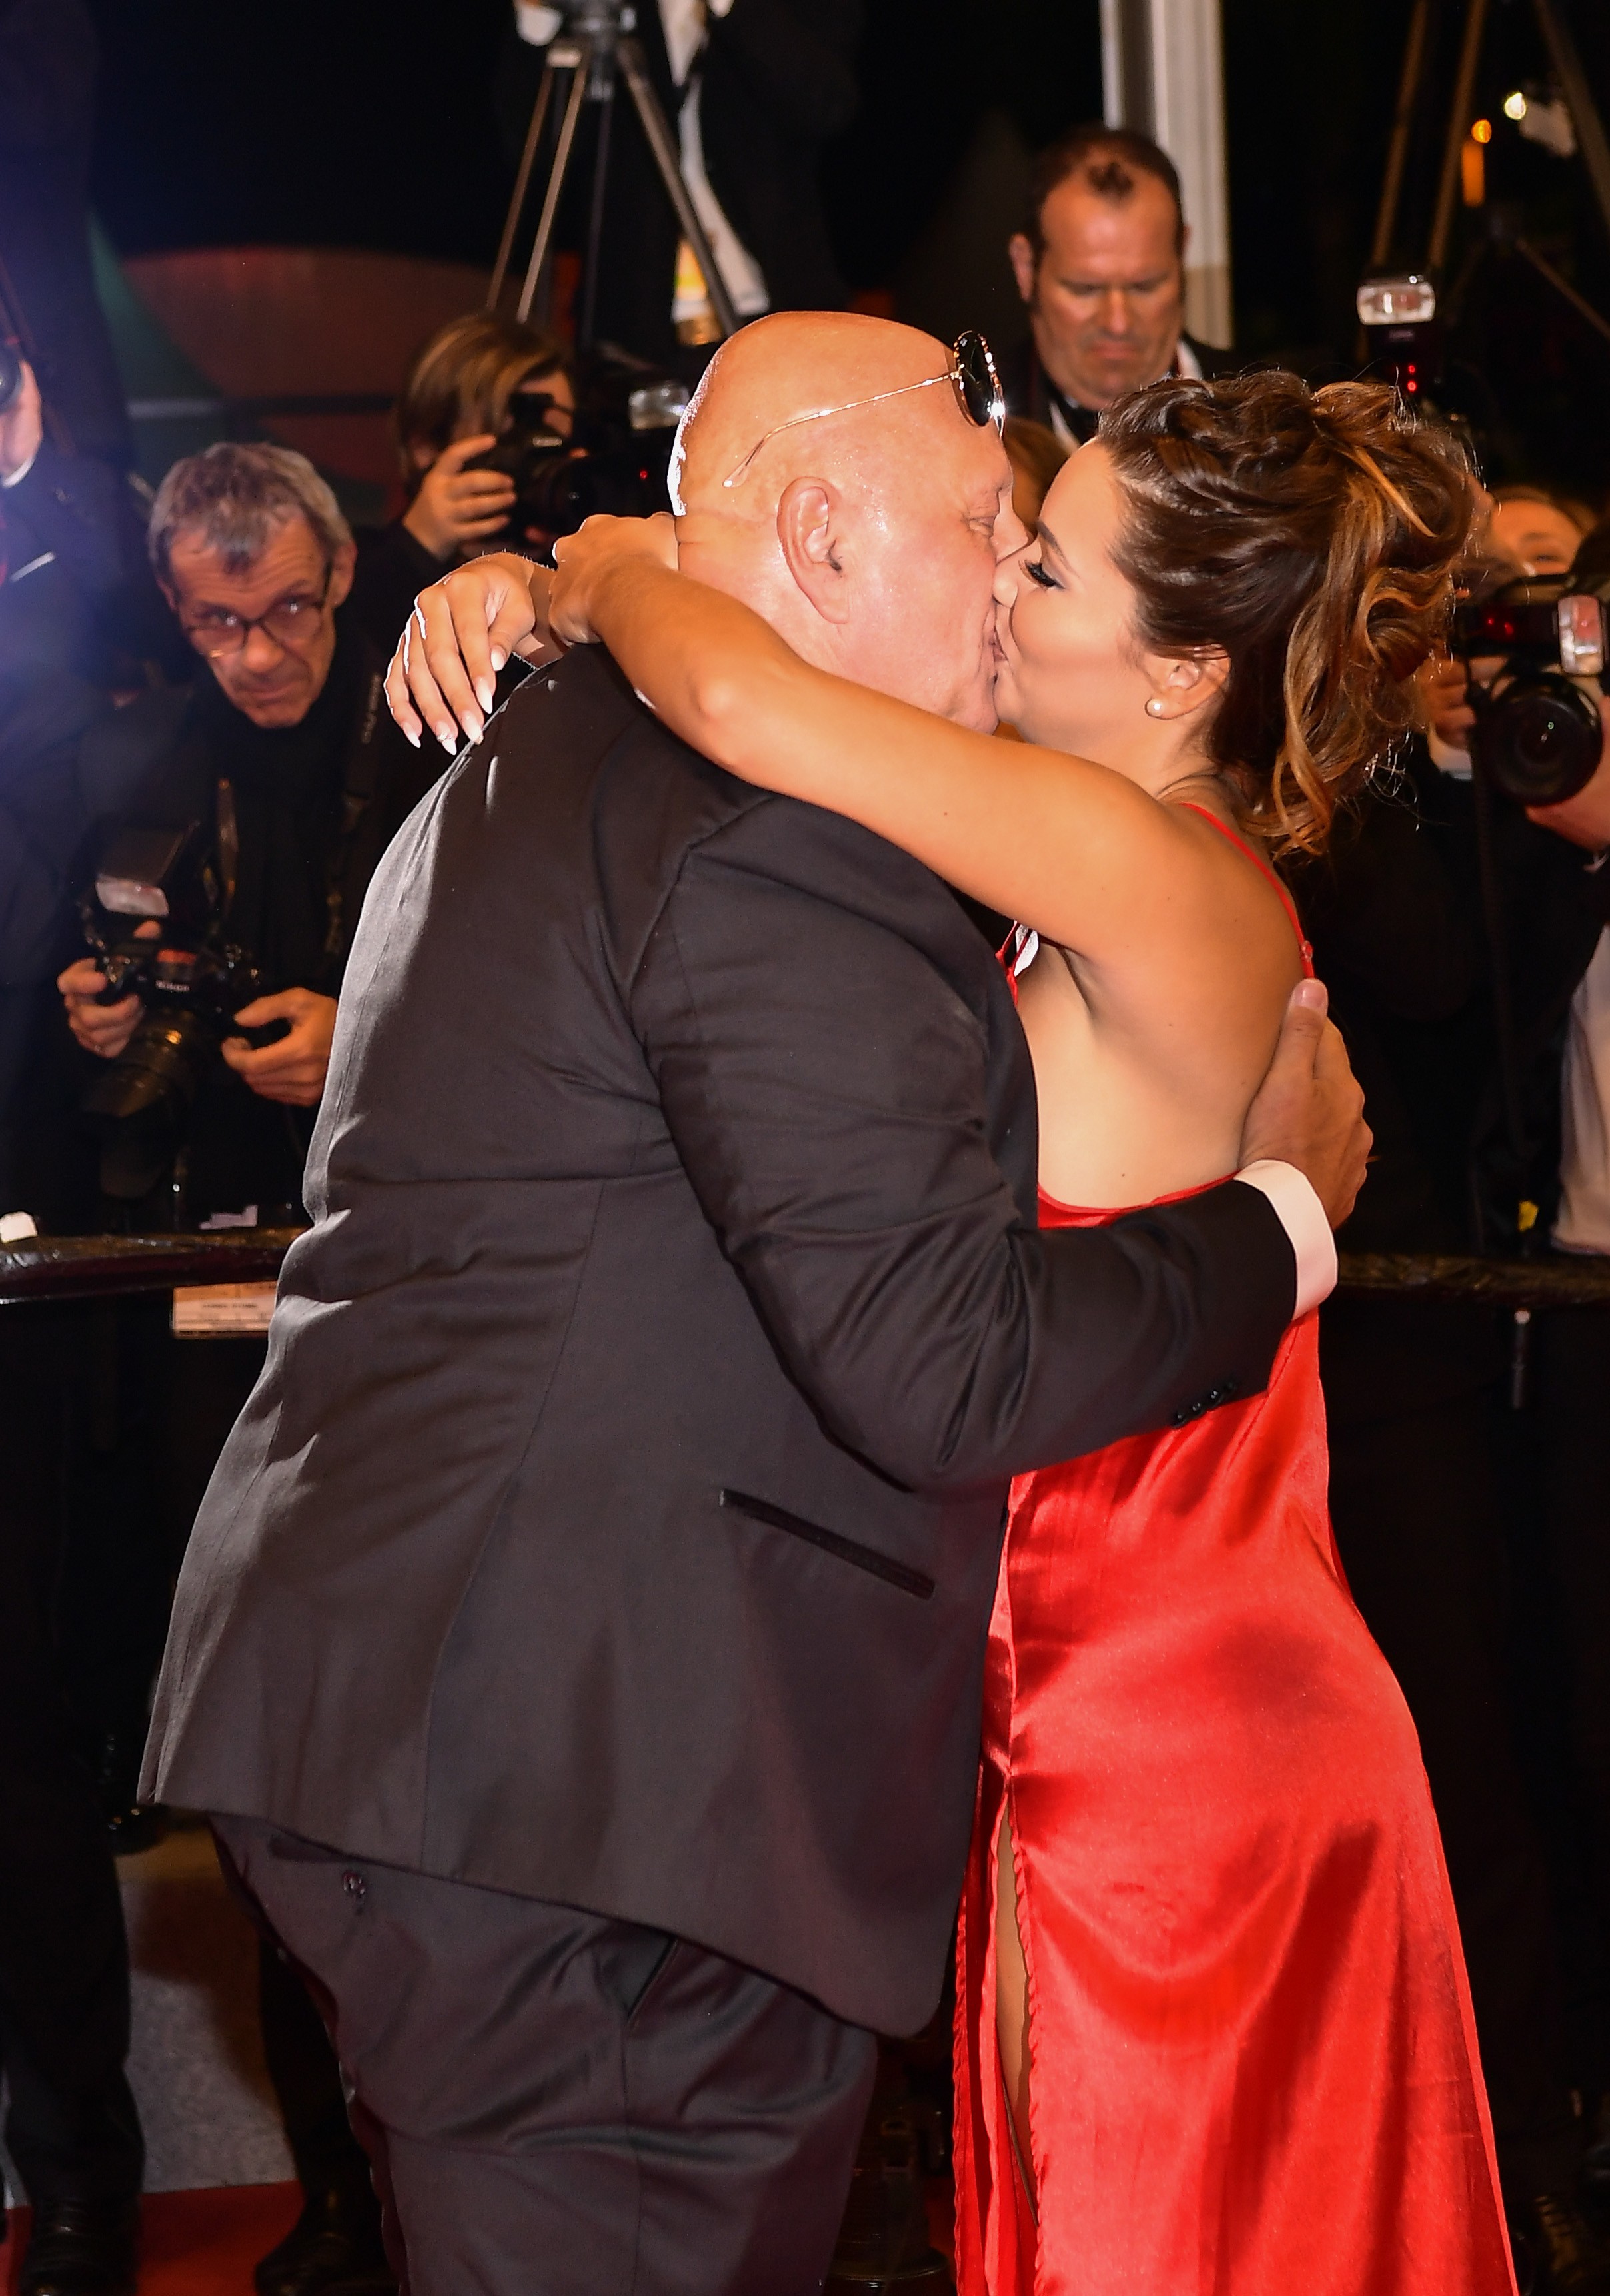 Um convidado anônimo após pedir a mão de sua acompanhante em casamento durante a apssage dos dois pelo red carpet de Cannes (Foto: Getty Images)